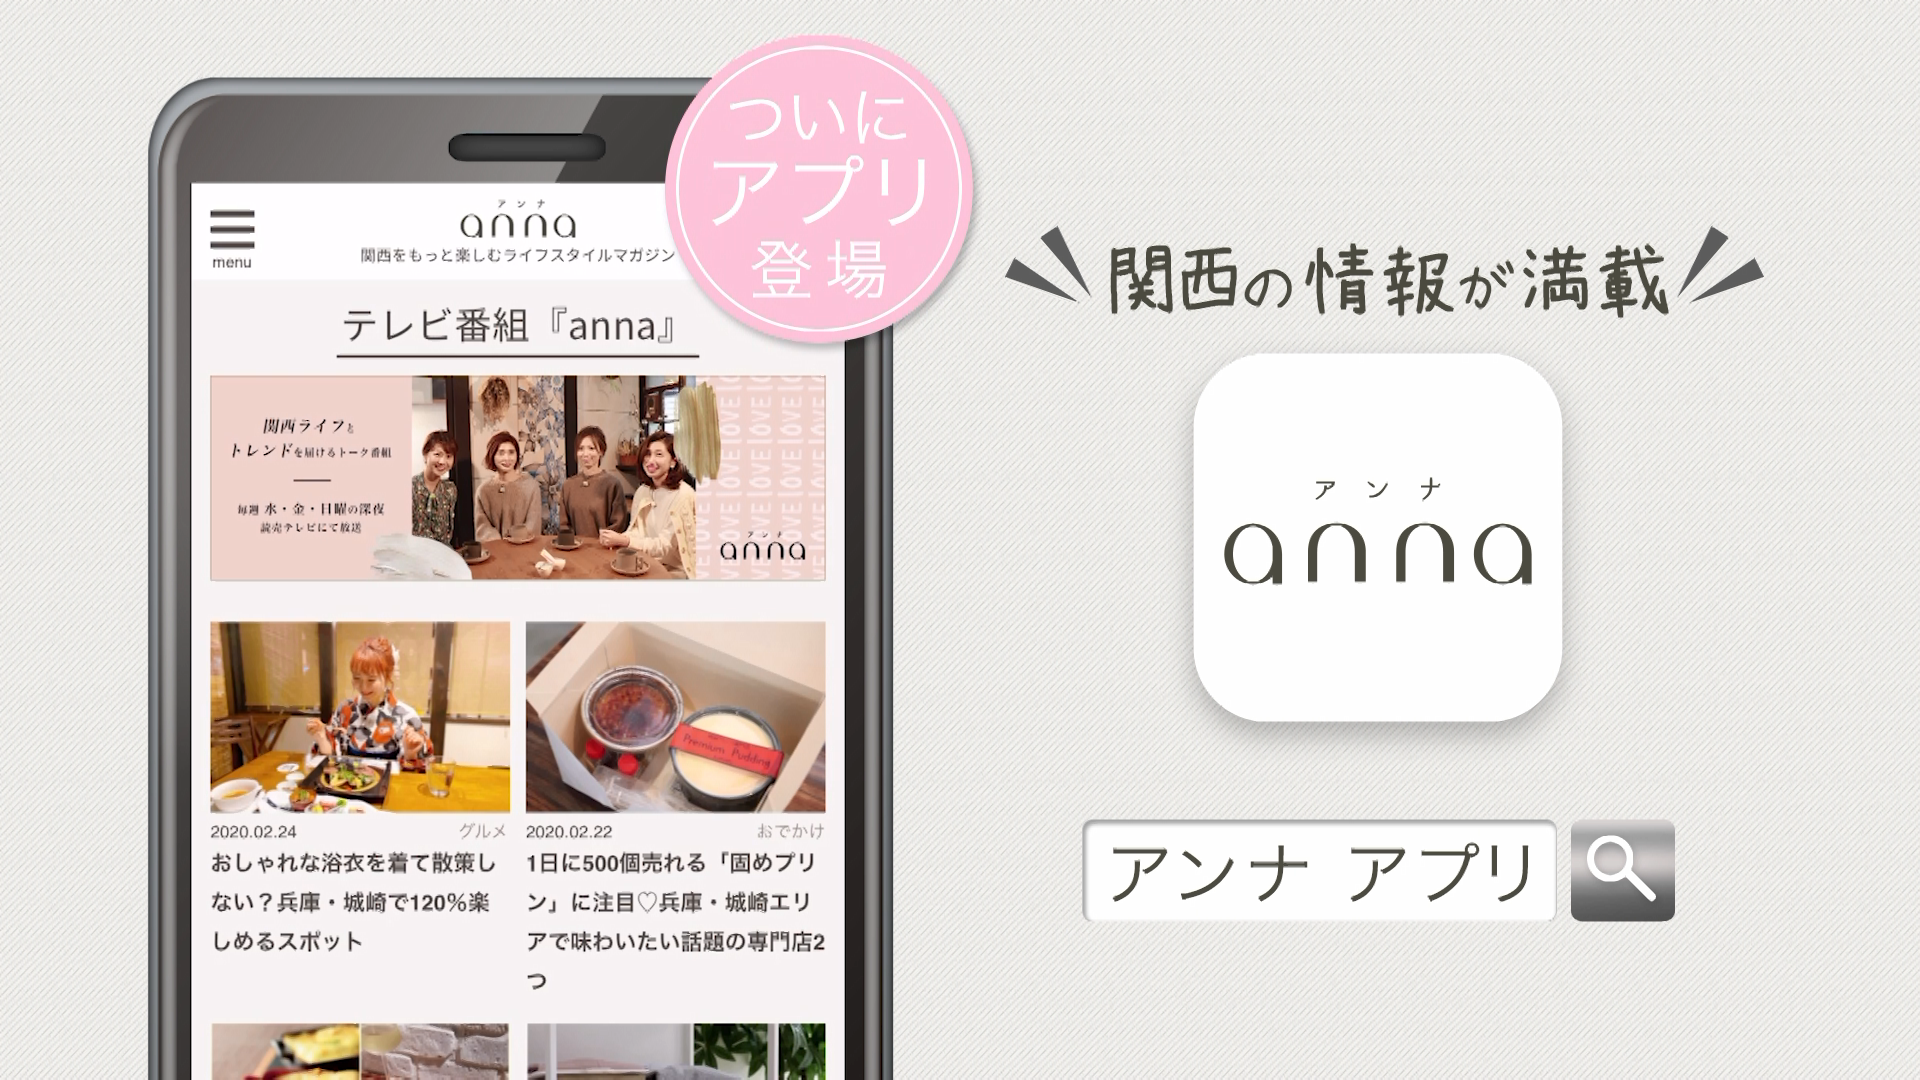 関西の女性のための Anna アンナ がついにアプリに 新テレビcmも放送スタート 株式会社 ｙｔｖメディアデザインのプレスリリース